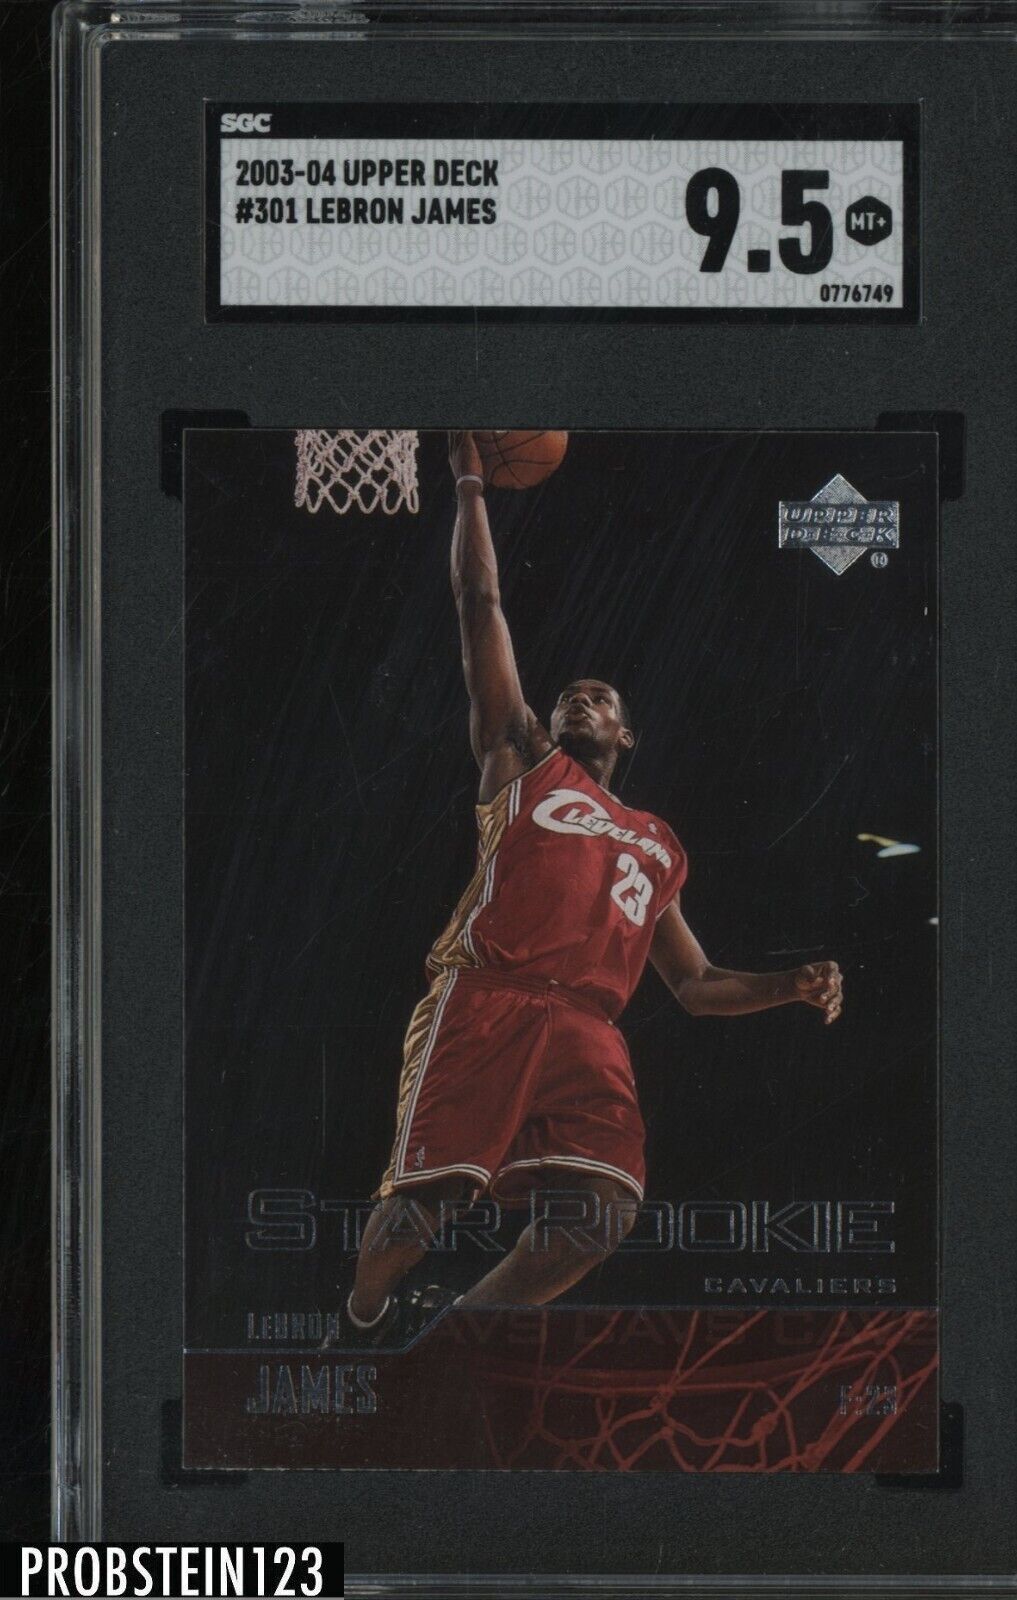 2003-04 Upper Deck #301 LeBron James Cavaliers RC Rookie SGC 9.5 MINT+